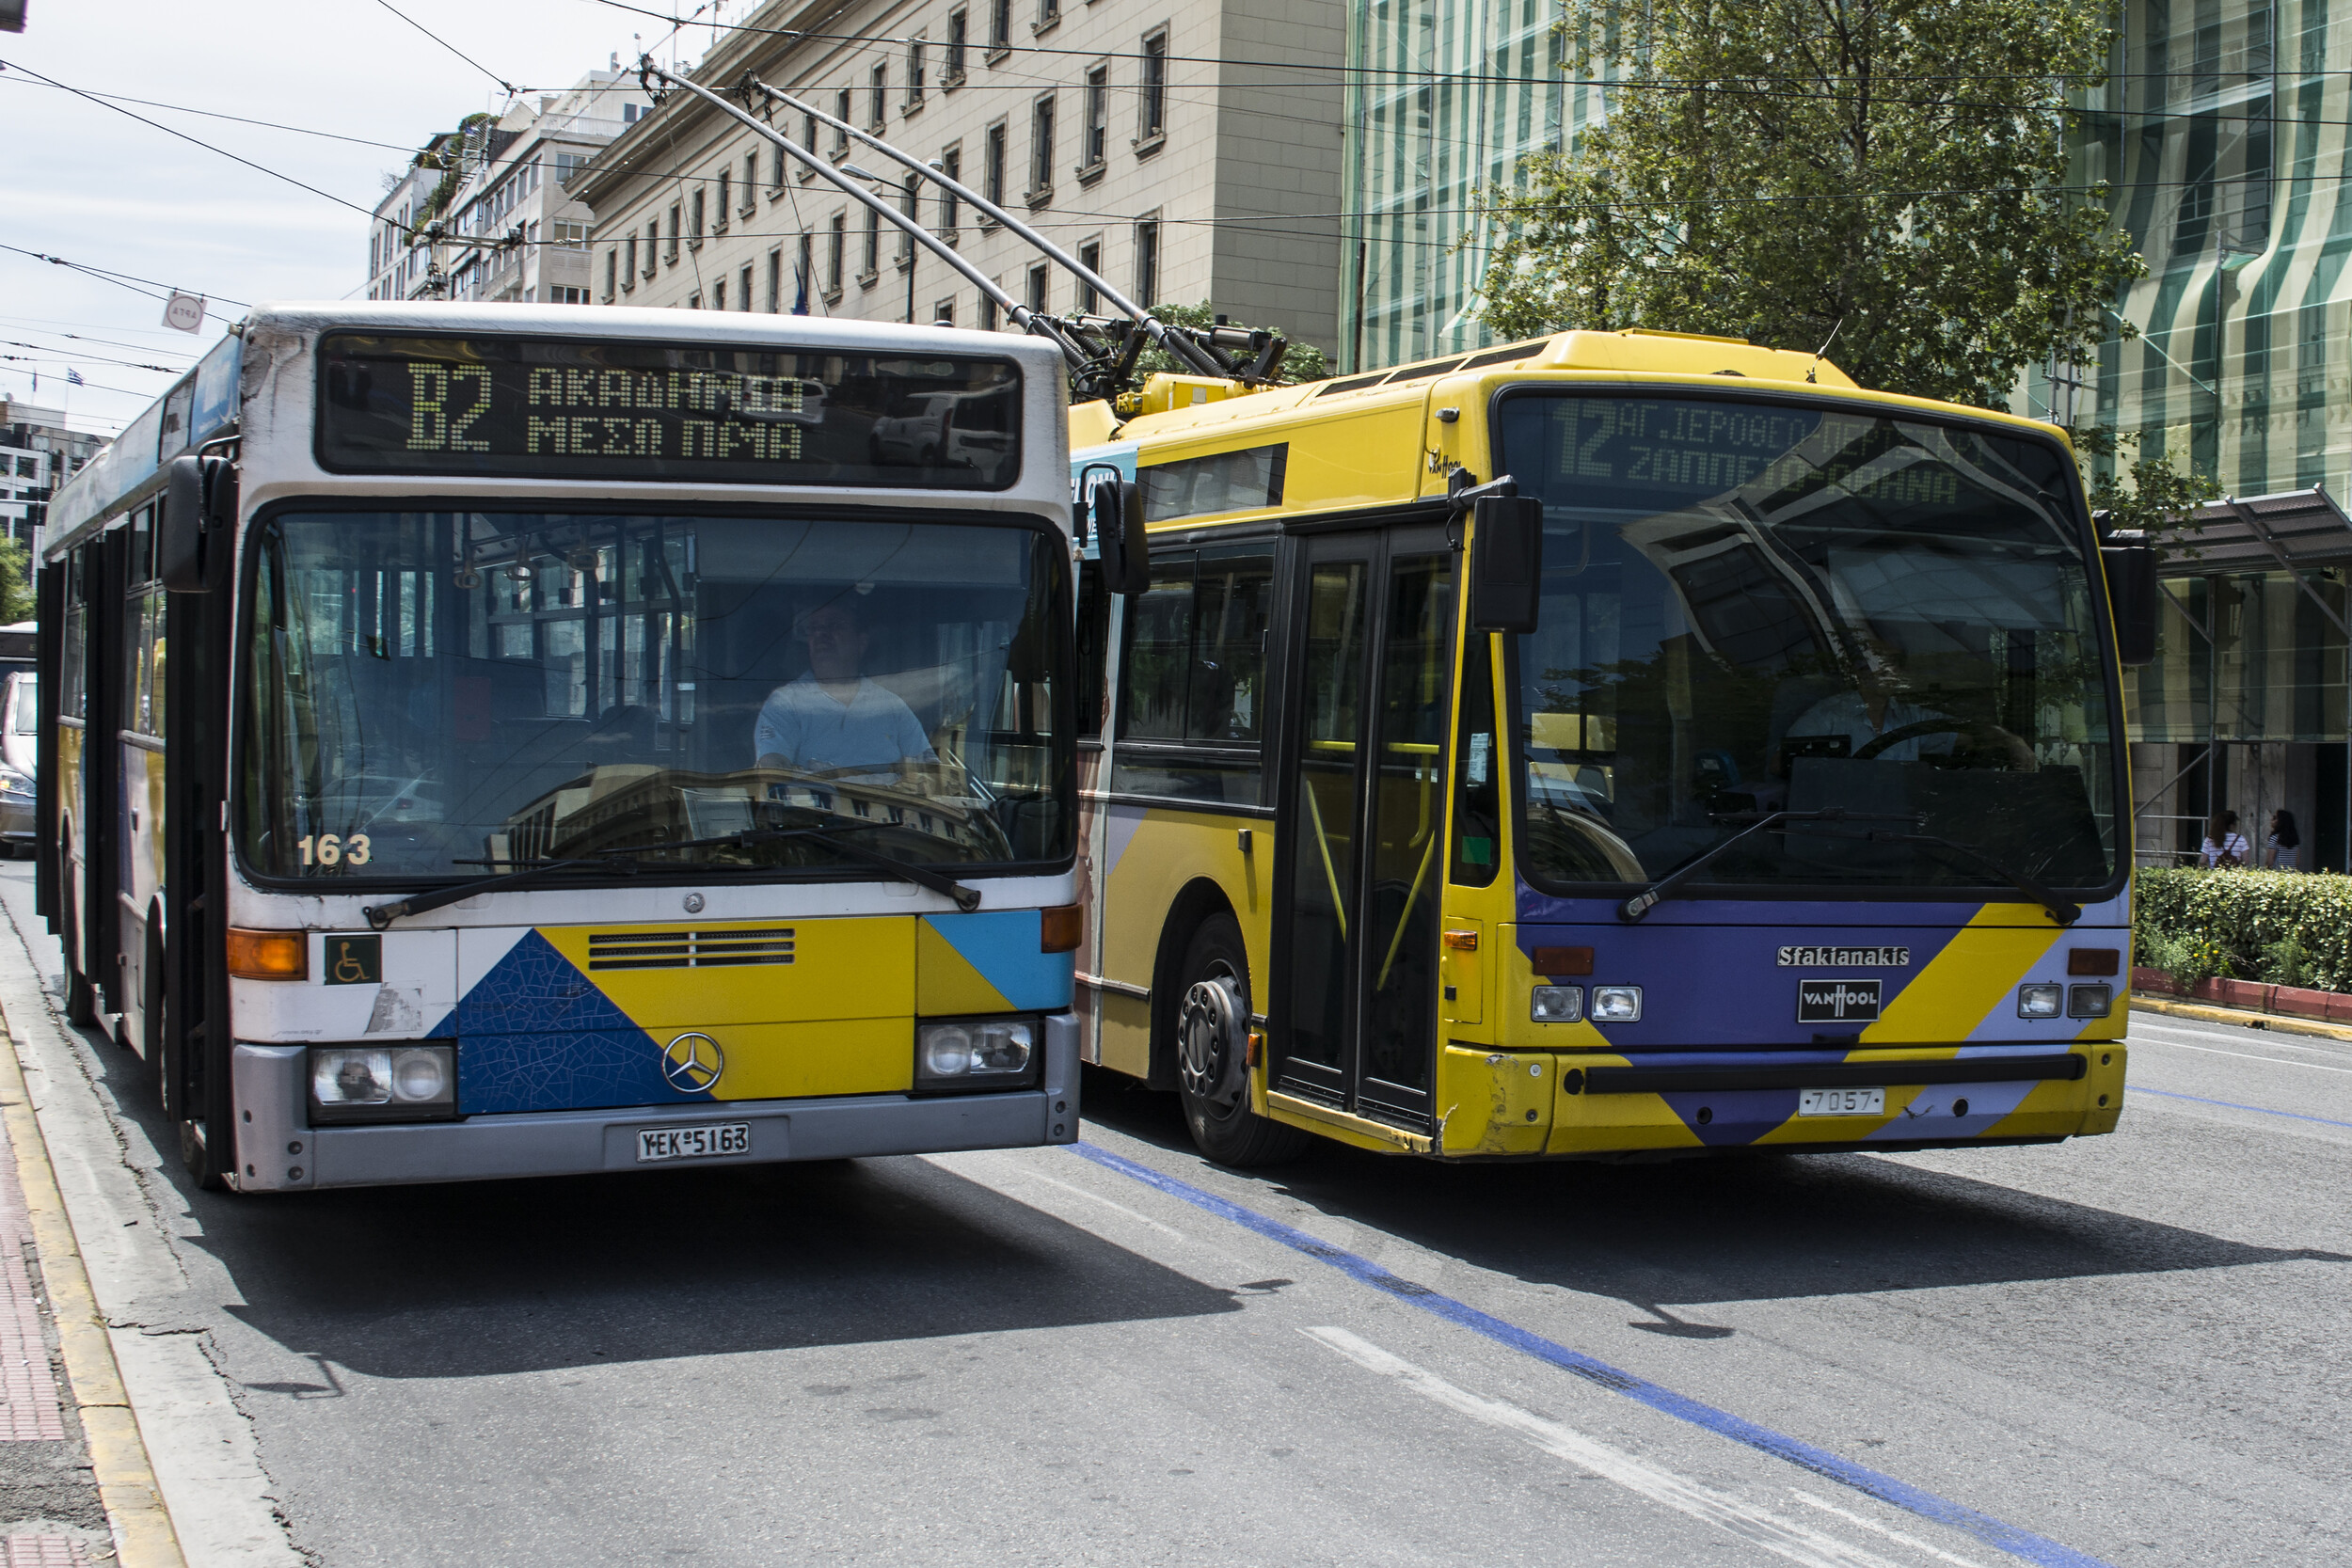 Νέα στάση εργασίας σε λεωφορεία και τρόλεϊ - Ποιες ώρες θα είναι ακινητοποιημένα